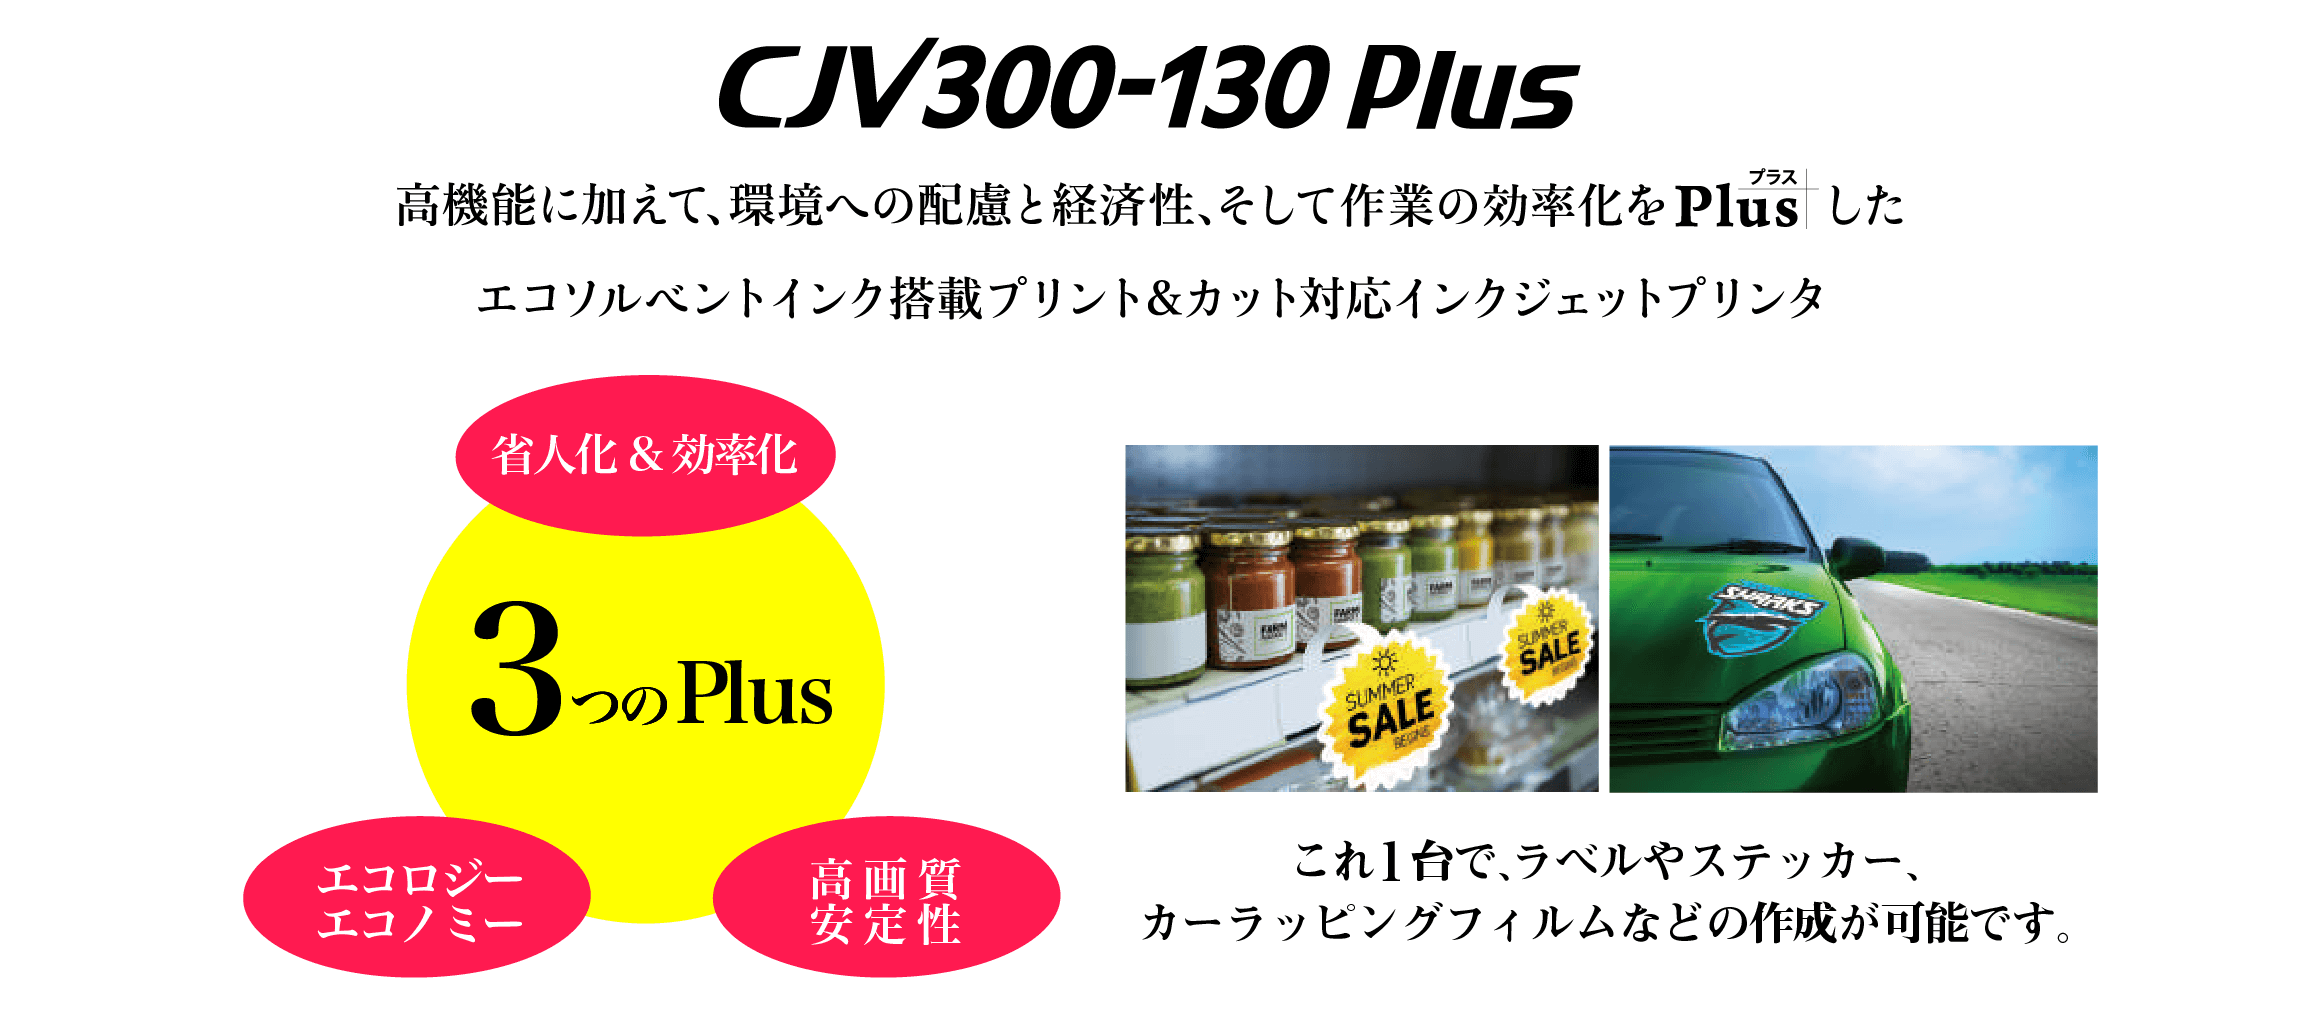 ミマキ/『CJV300-130 Plus』ソルベントインクジェットプリンタ激安通販キャンペーン